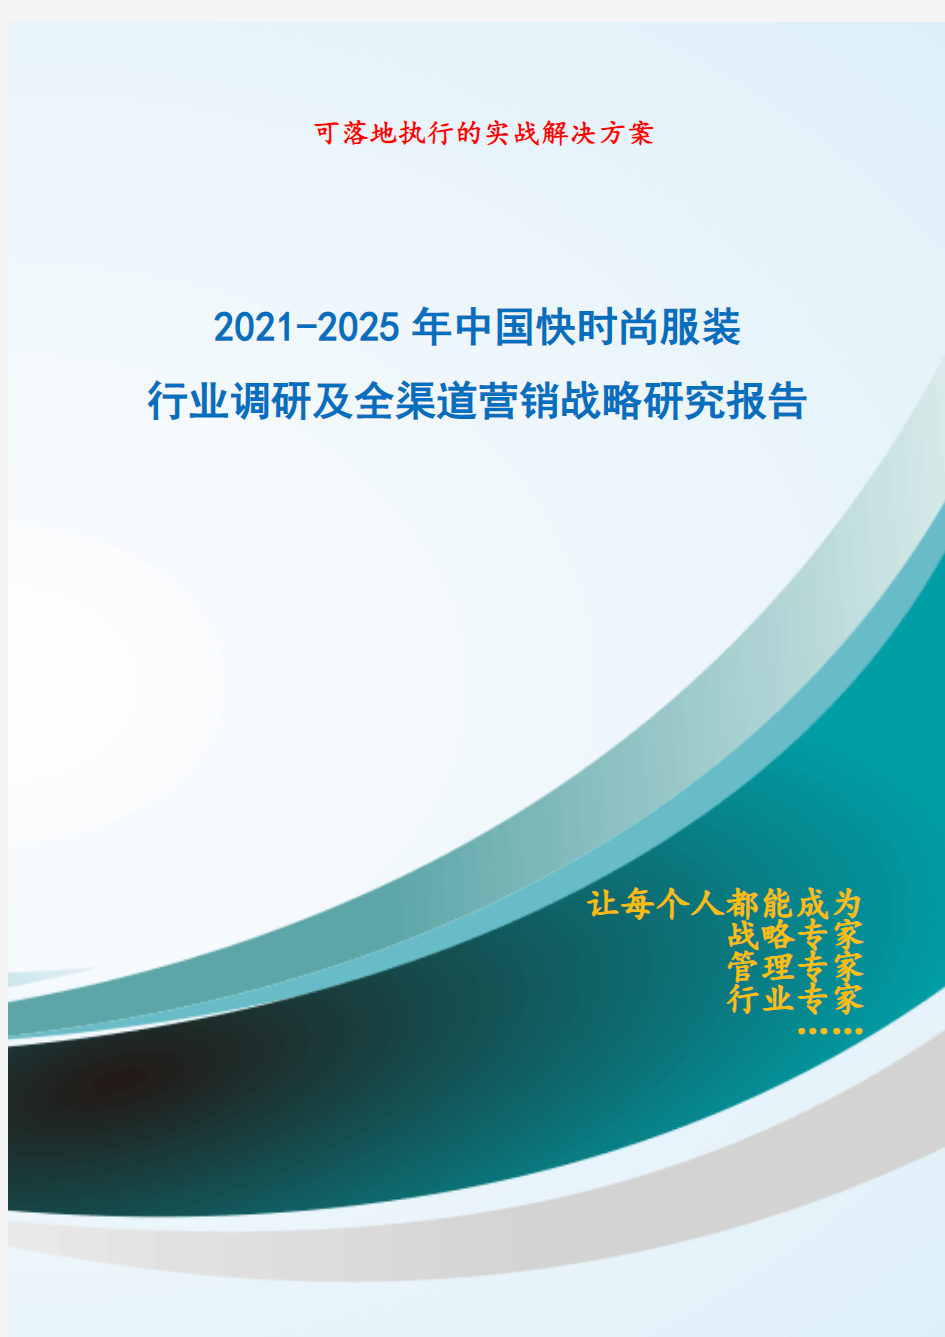 2021-2025年中国快时尚服装行业调研及全渠道营销战略研究报告